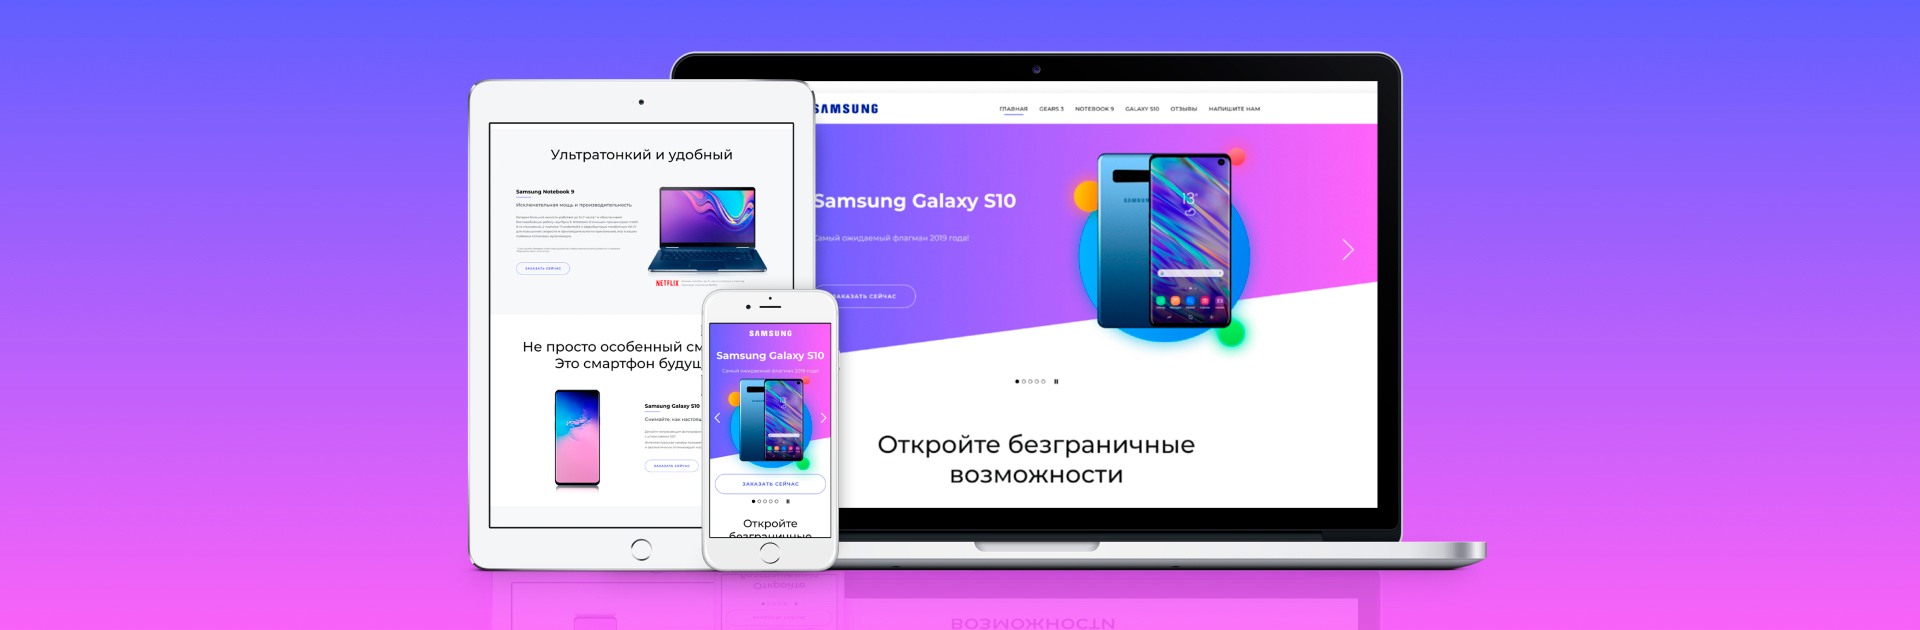 Разработка дизайна сайта для маркетинговой компании Samsung